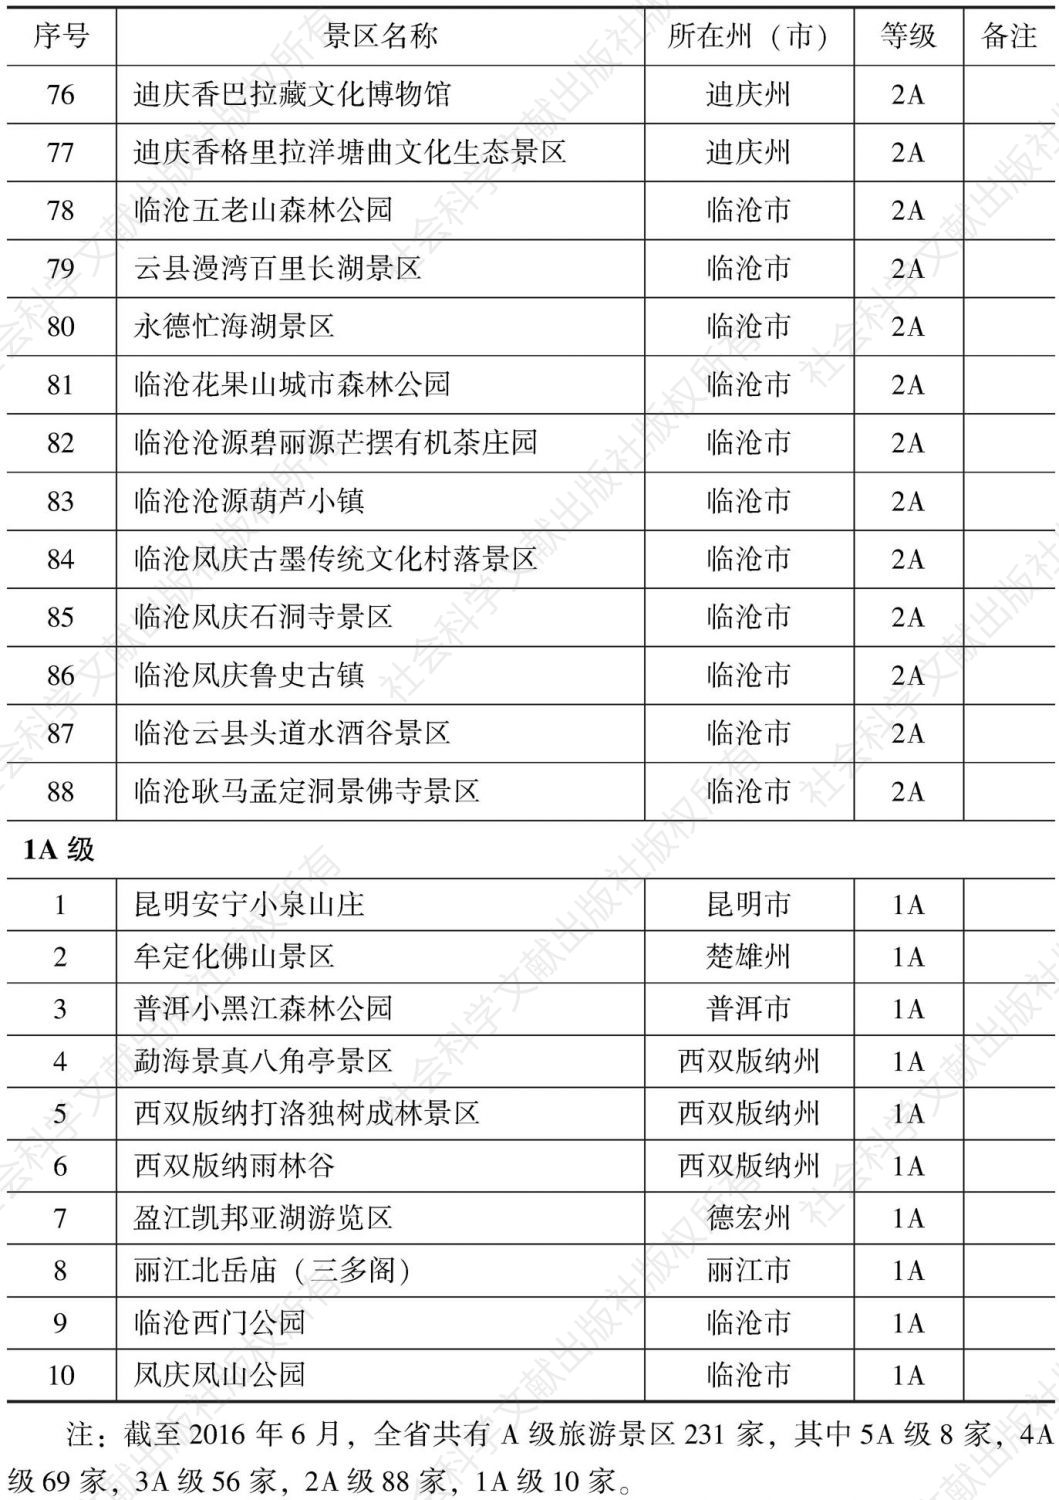 附表2 云南省A级旅游景区名录-续表8